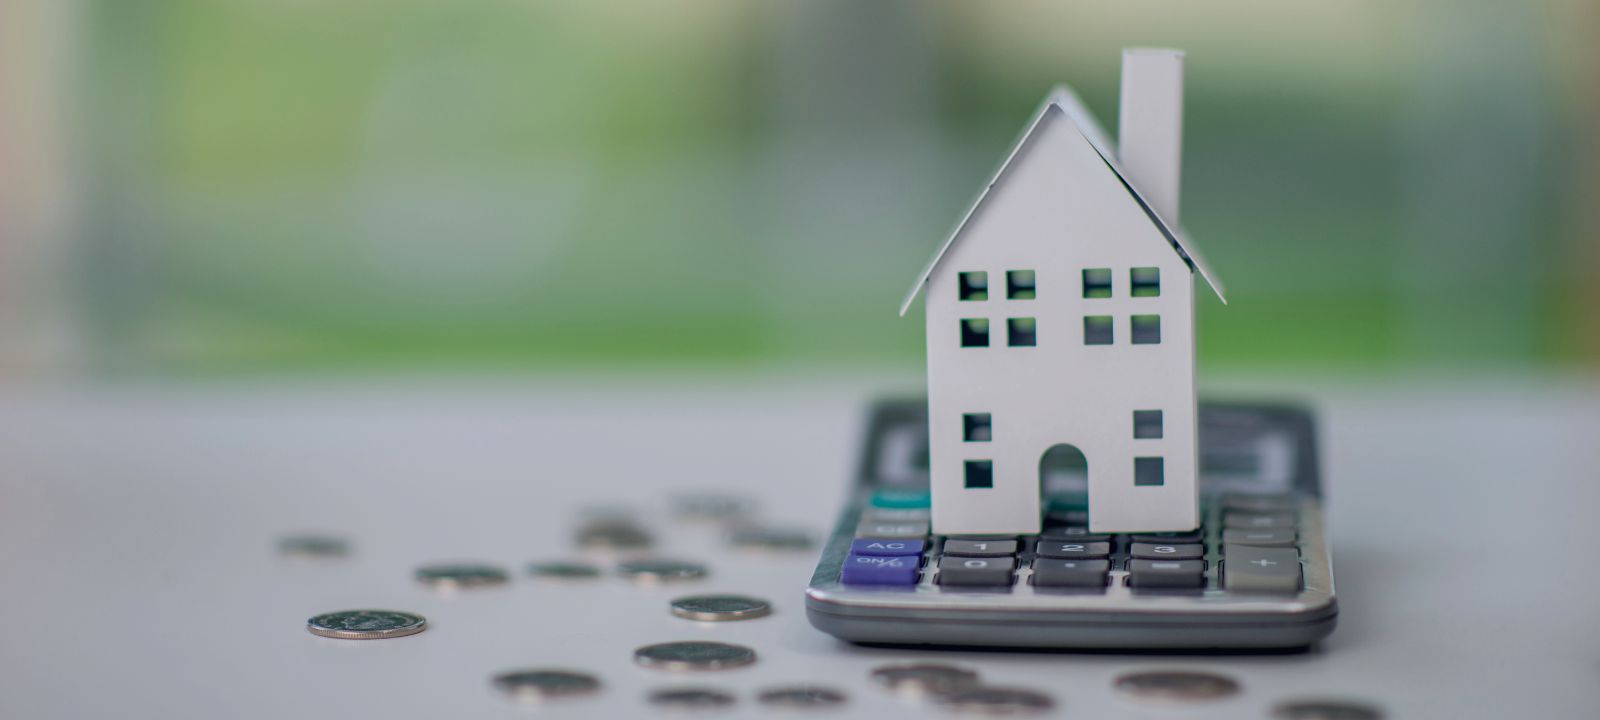 Comprar una vivienda sin hipoteca: Qué opciones tengo si no tengo ahorros